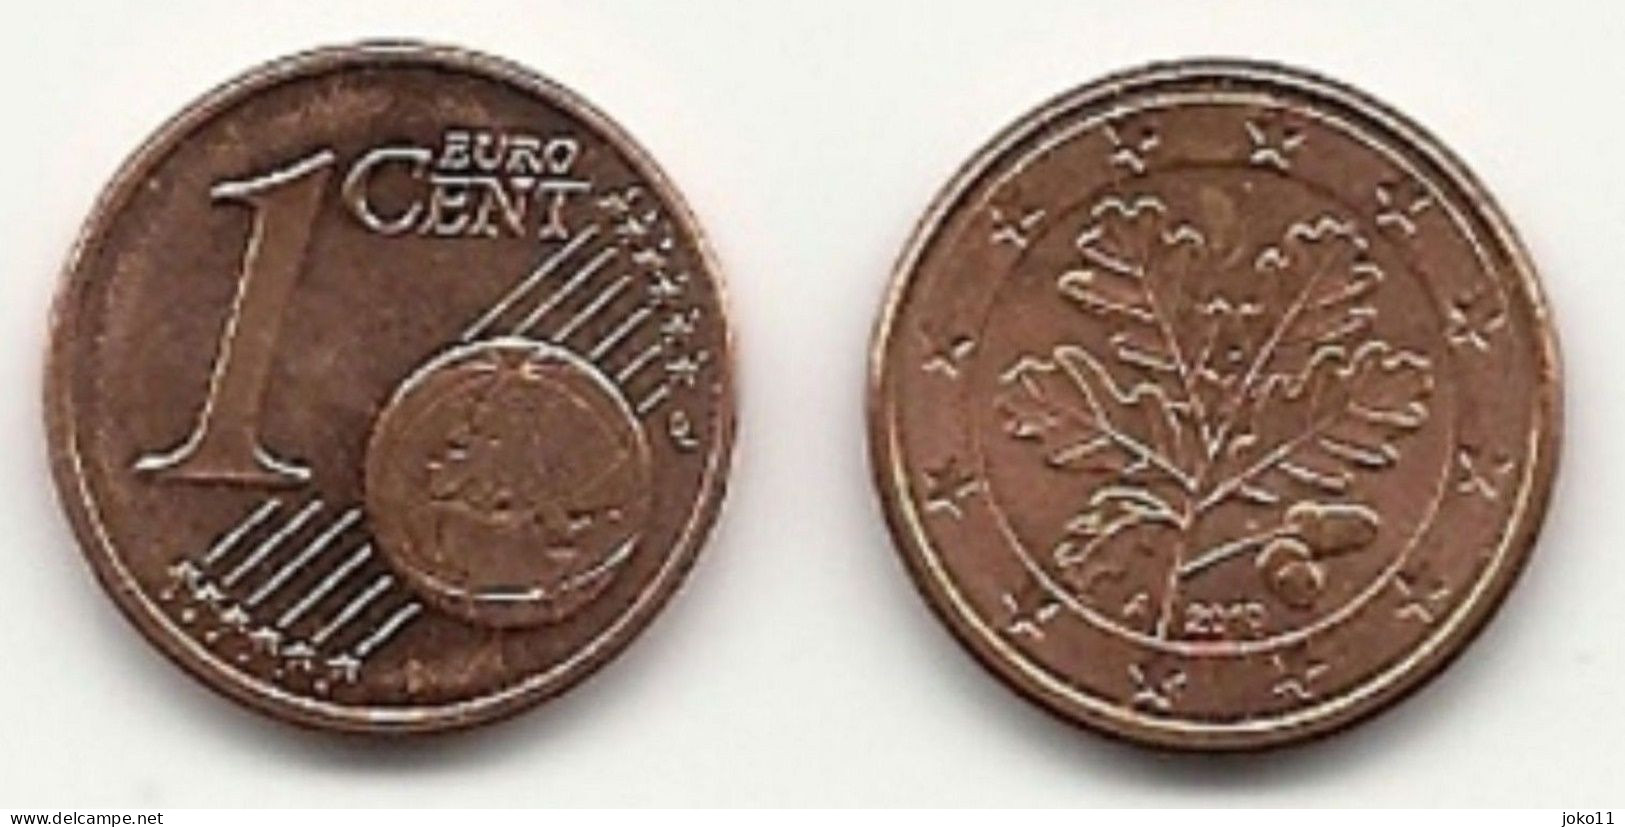 1 Cent, 2010,  Prägestätte (A),  Vz, Sehr Gut Erhaltene Umlaufmünzen - Allemagne